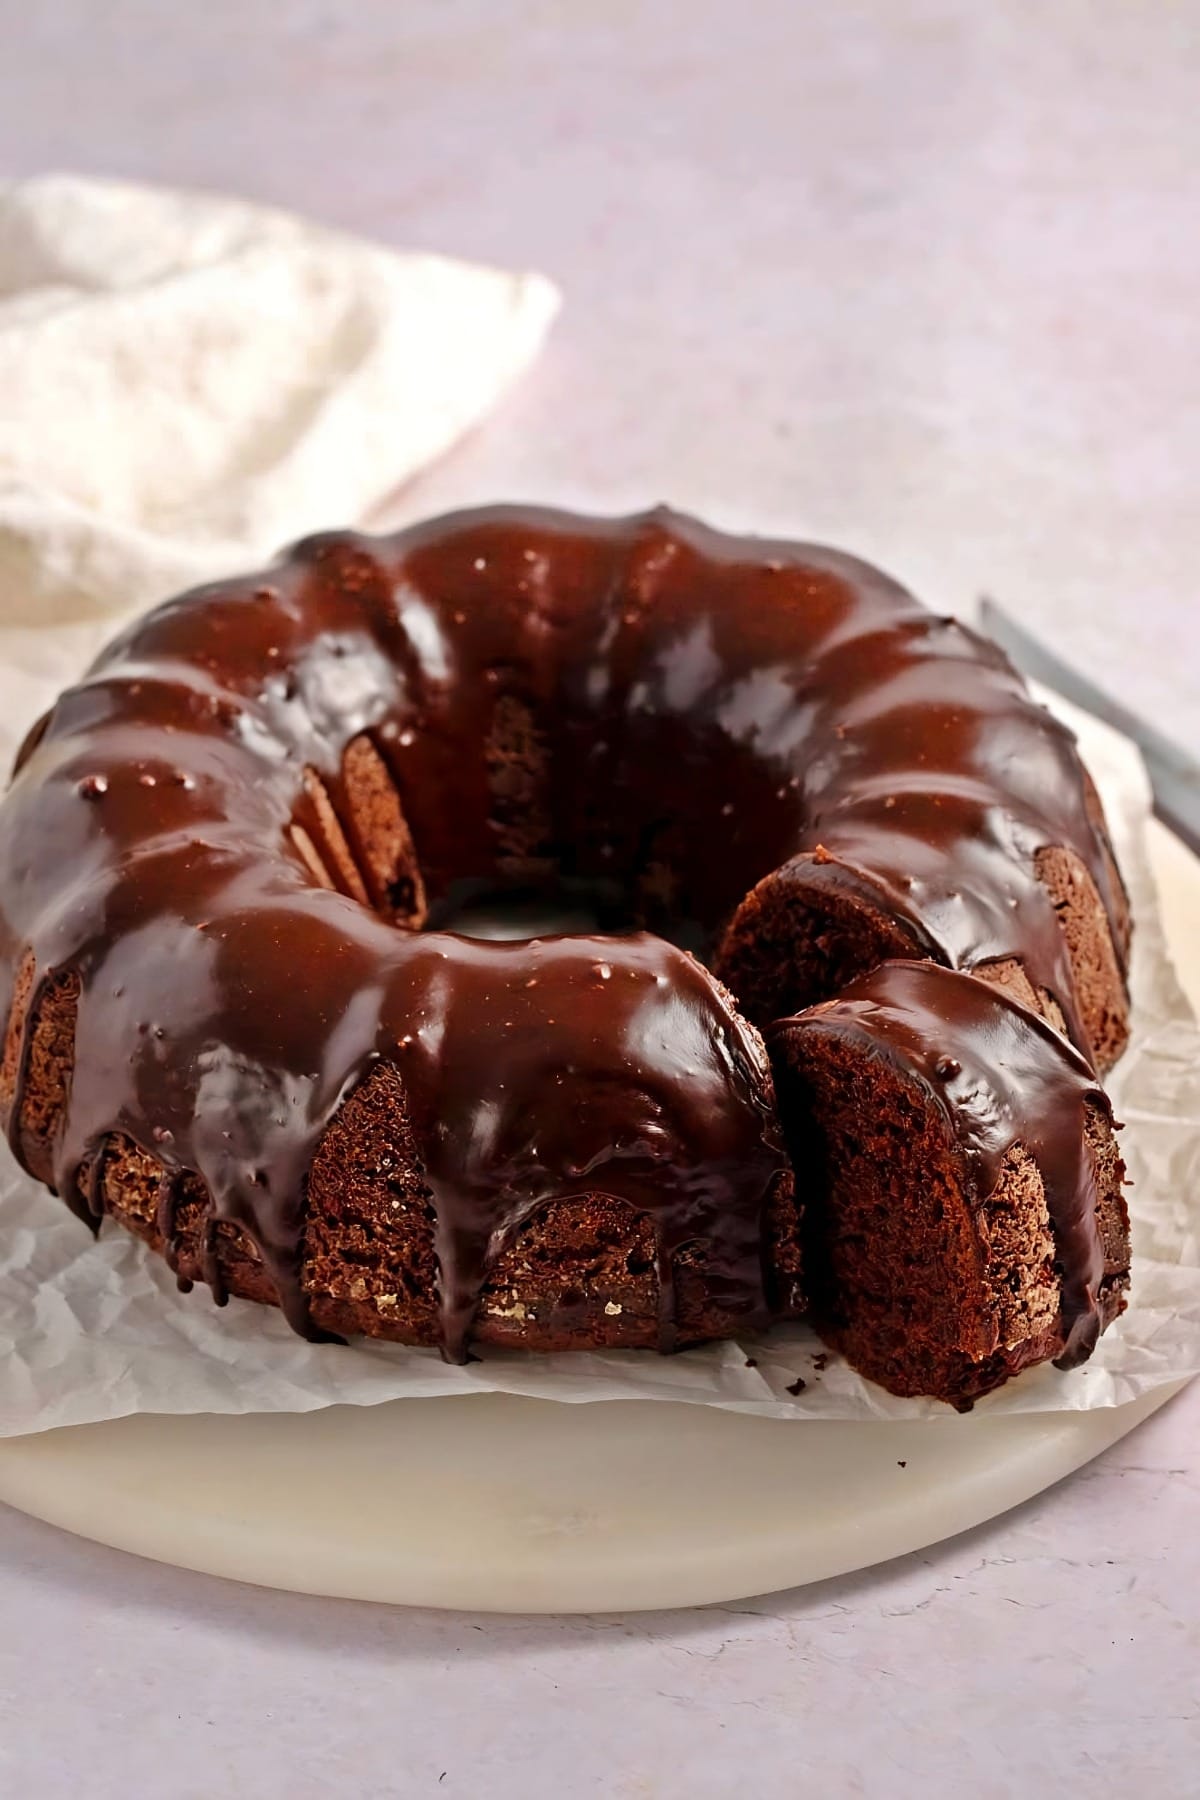 Chocolate Bundt Cake with Glaze